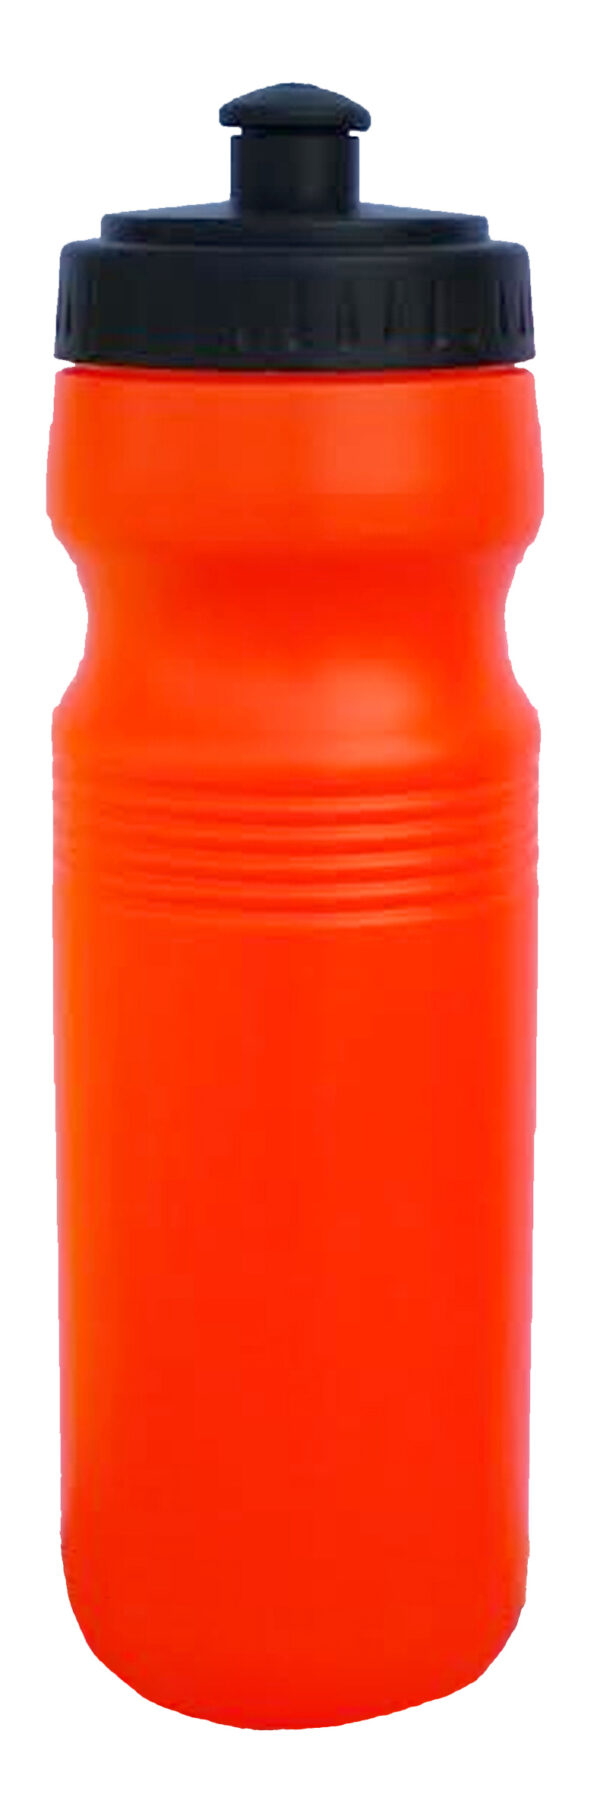 בקבוק שתיה 750 מ"ל צבעי ניאון